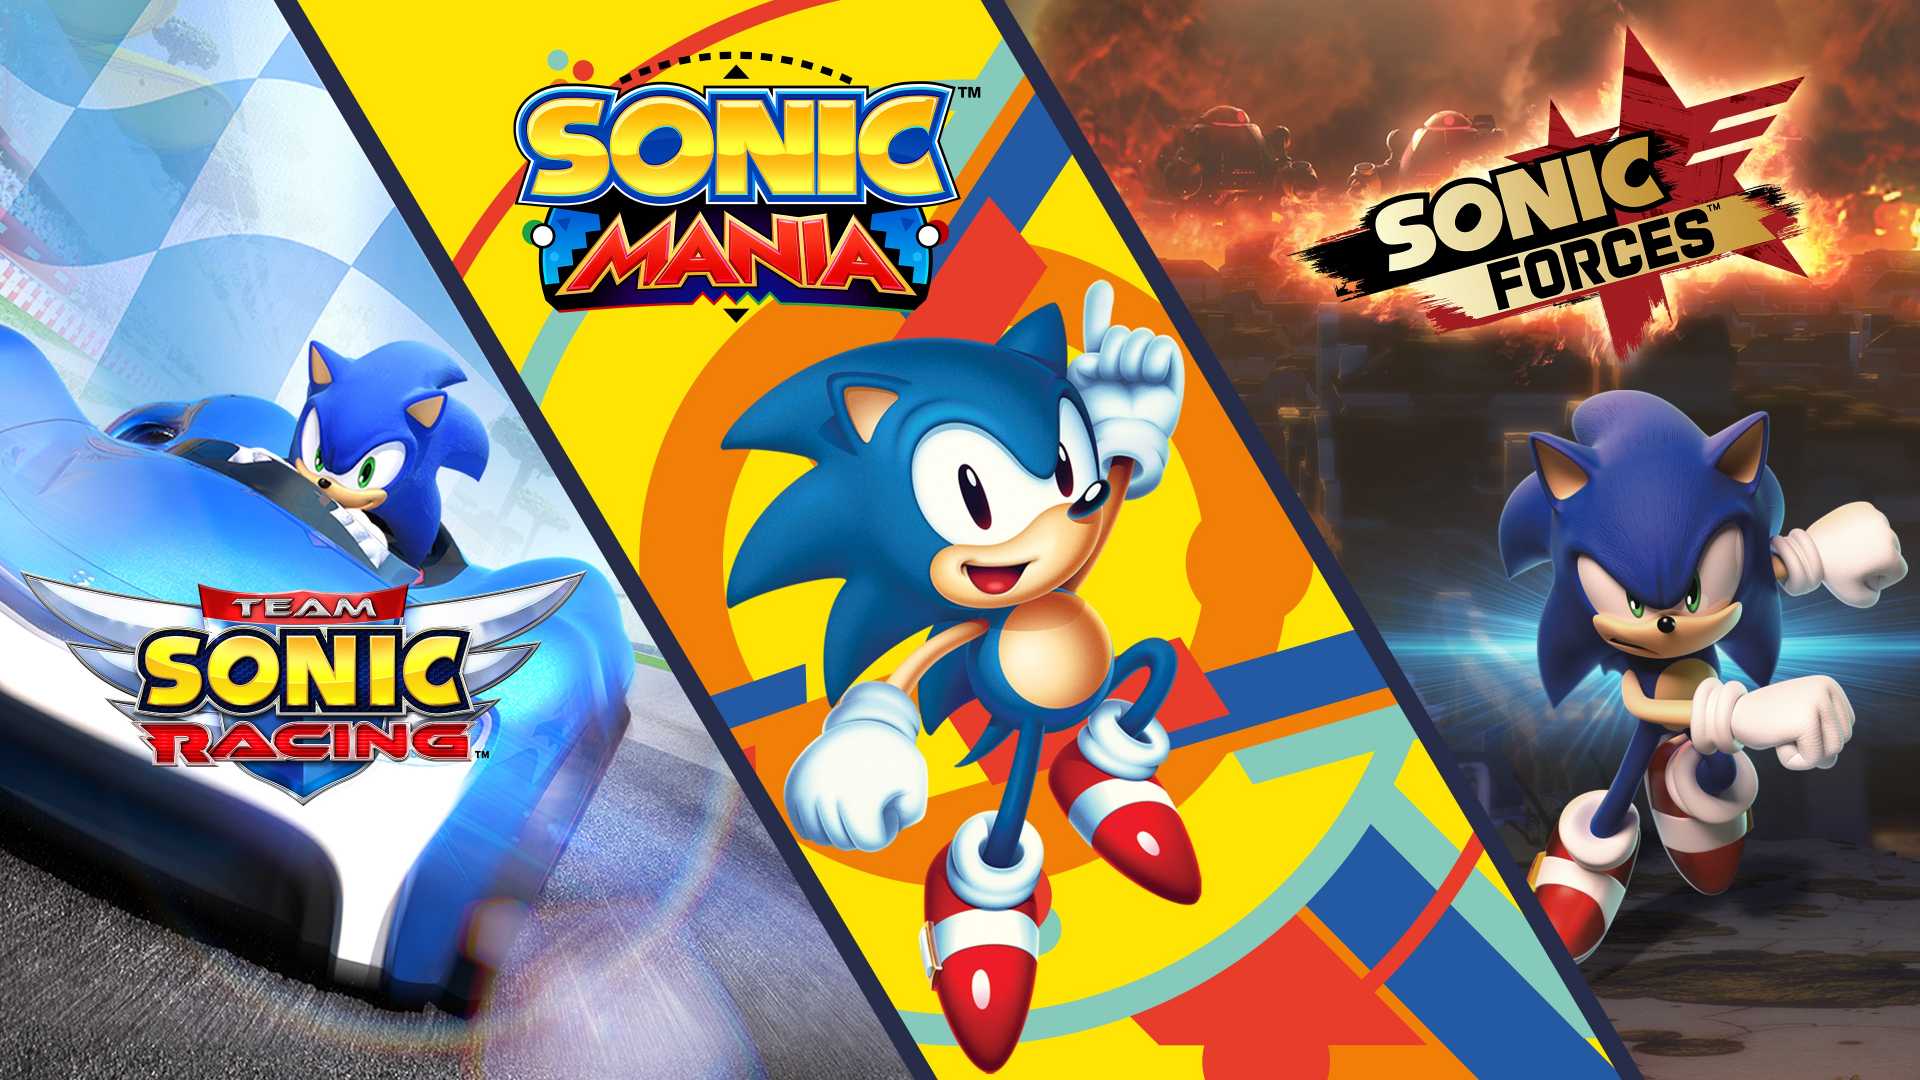 O pacote possui cerca de 19 jogos, e entre eles, temos títulos como: Sonic 3 & Knuckles, Sonic CD, Adventure 2, Generations, entre outros.